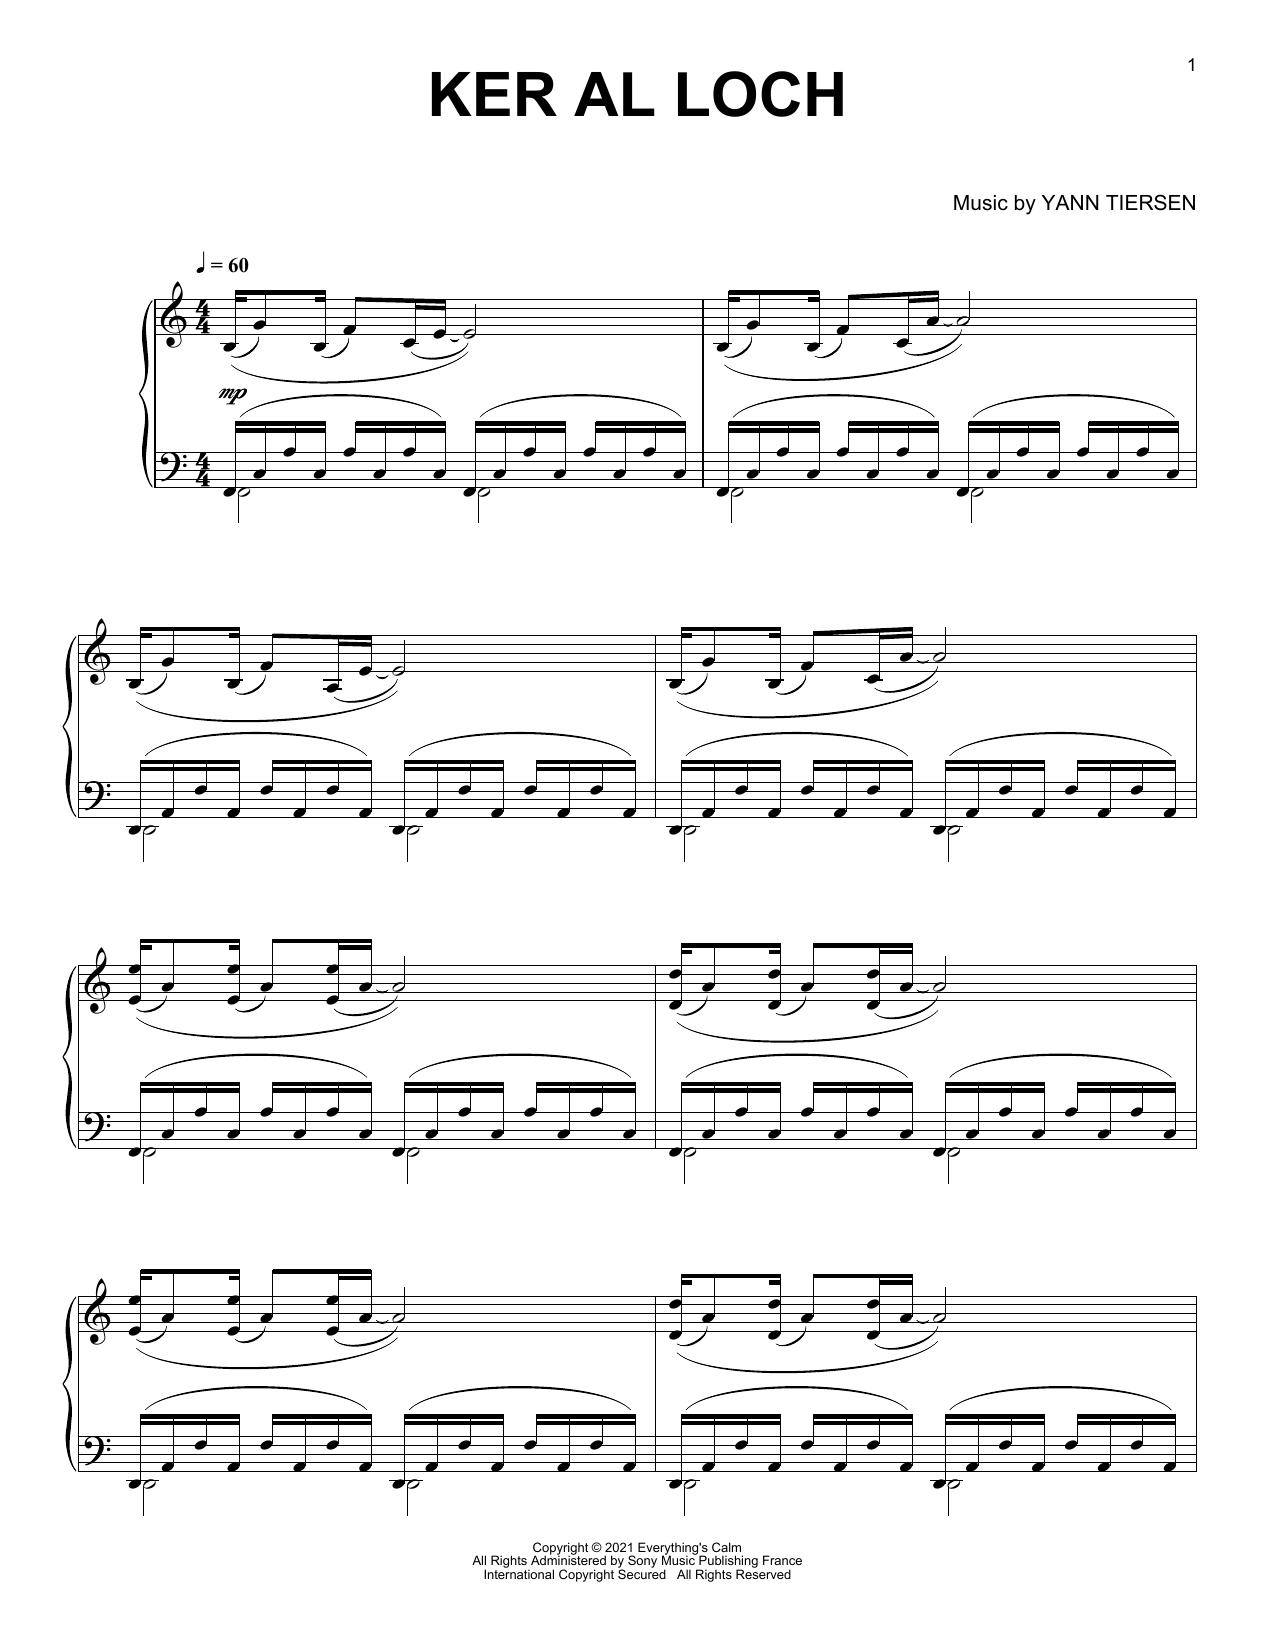 Download Yann Tiersen Ker Al Loch Sheet Music and learn how to play Piano Solo PDF digital score in minutes